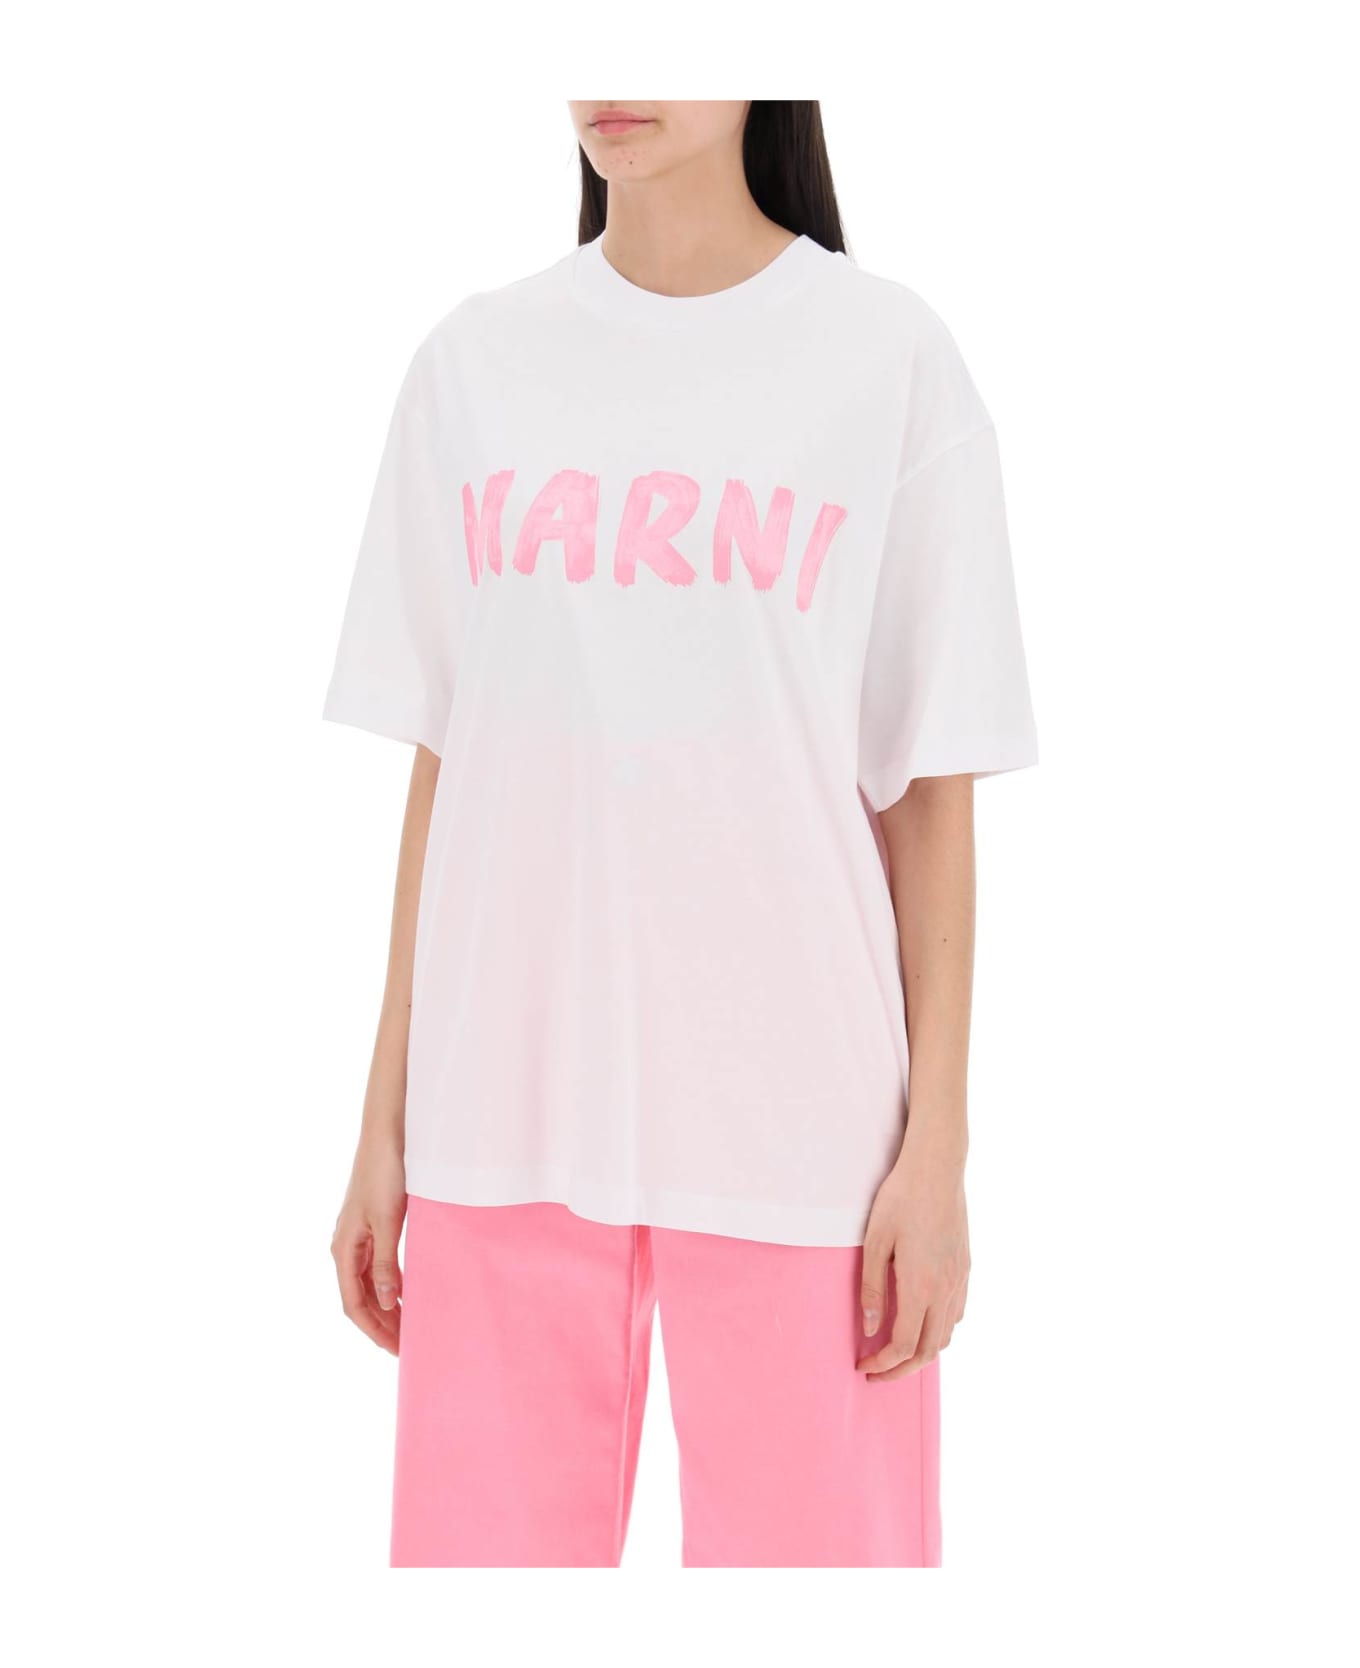 Marni Logo T-shirt - L5W01 Tシャツ